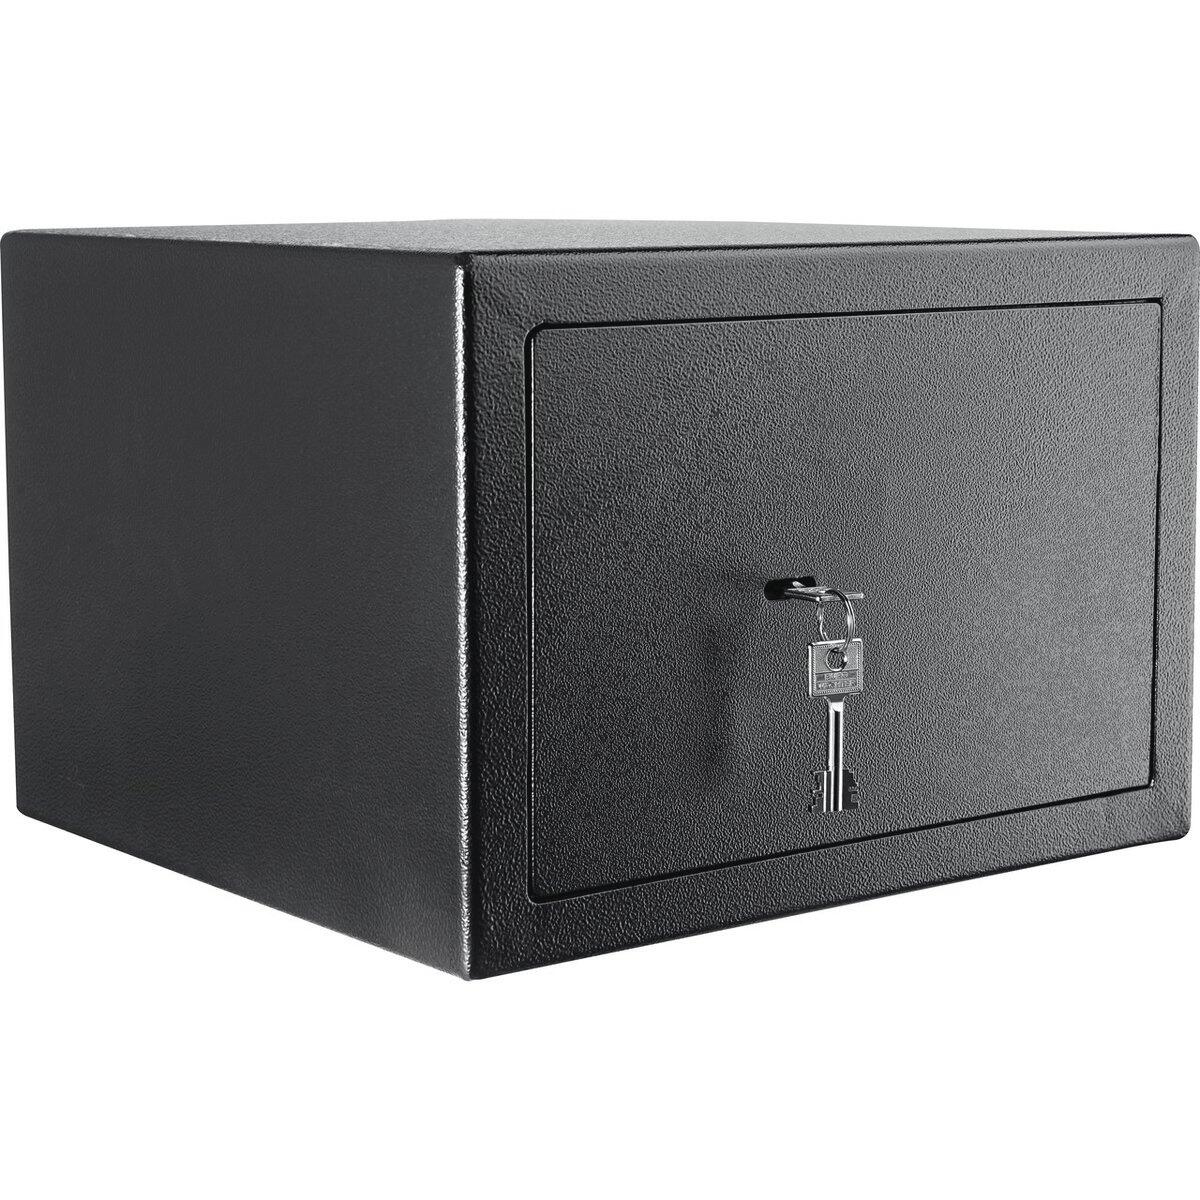 Caja fuerte de para instalar burg-wächter home safe h210s 40.2x27.8x37.6 cm